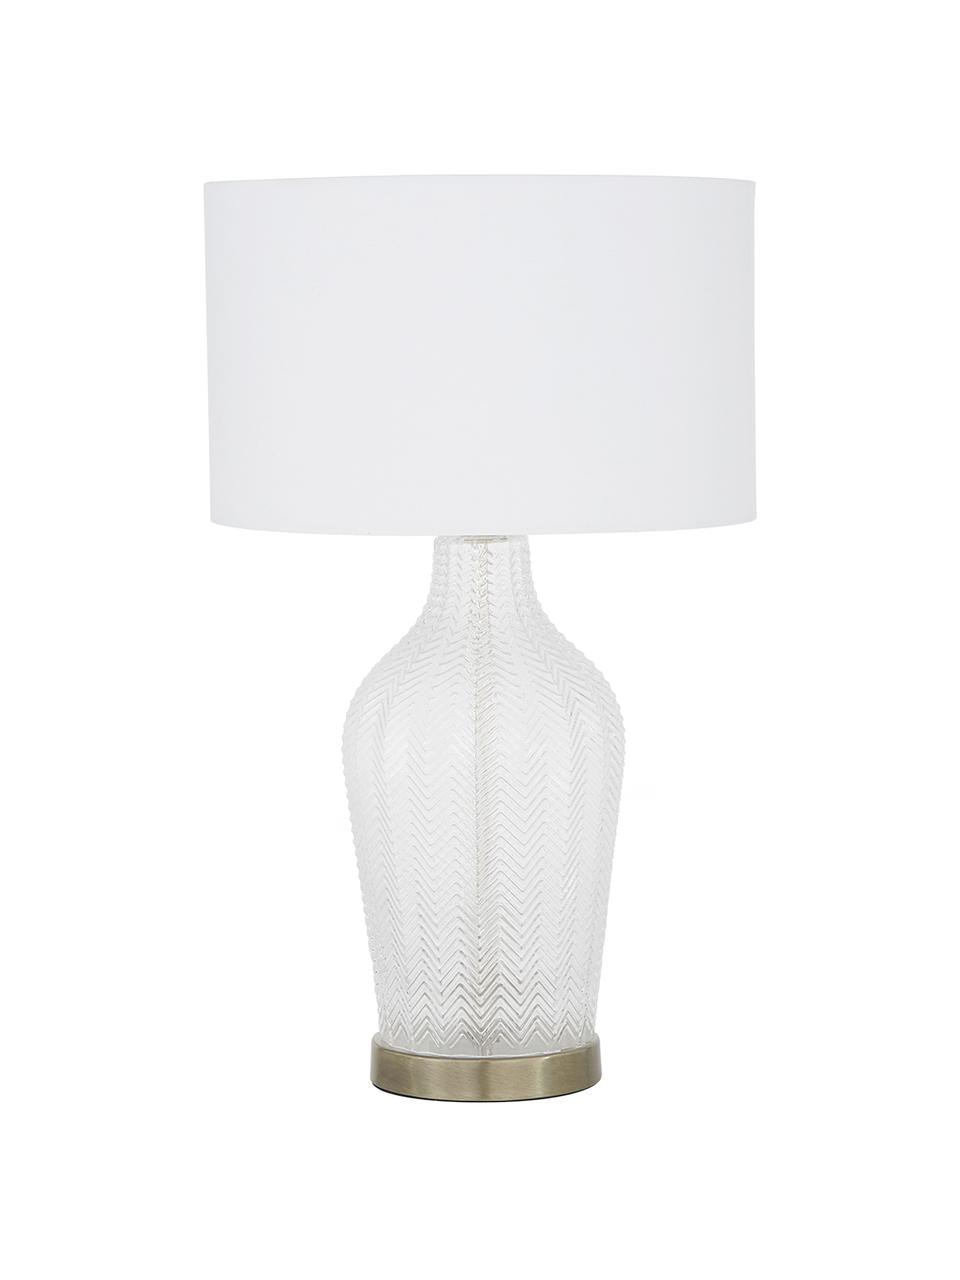 Grosse Tischlampe Sue mit Glasfuss, Lampenschirm: Textil, Lampenschirm: WeissLampenfuss: Transparent, Messing, gebürstet, Ø 33 x H 55 cm